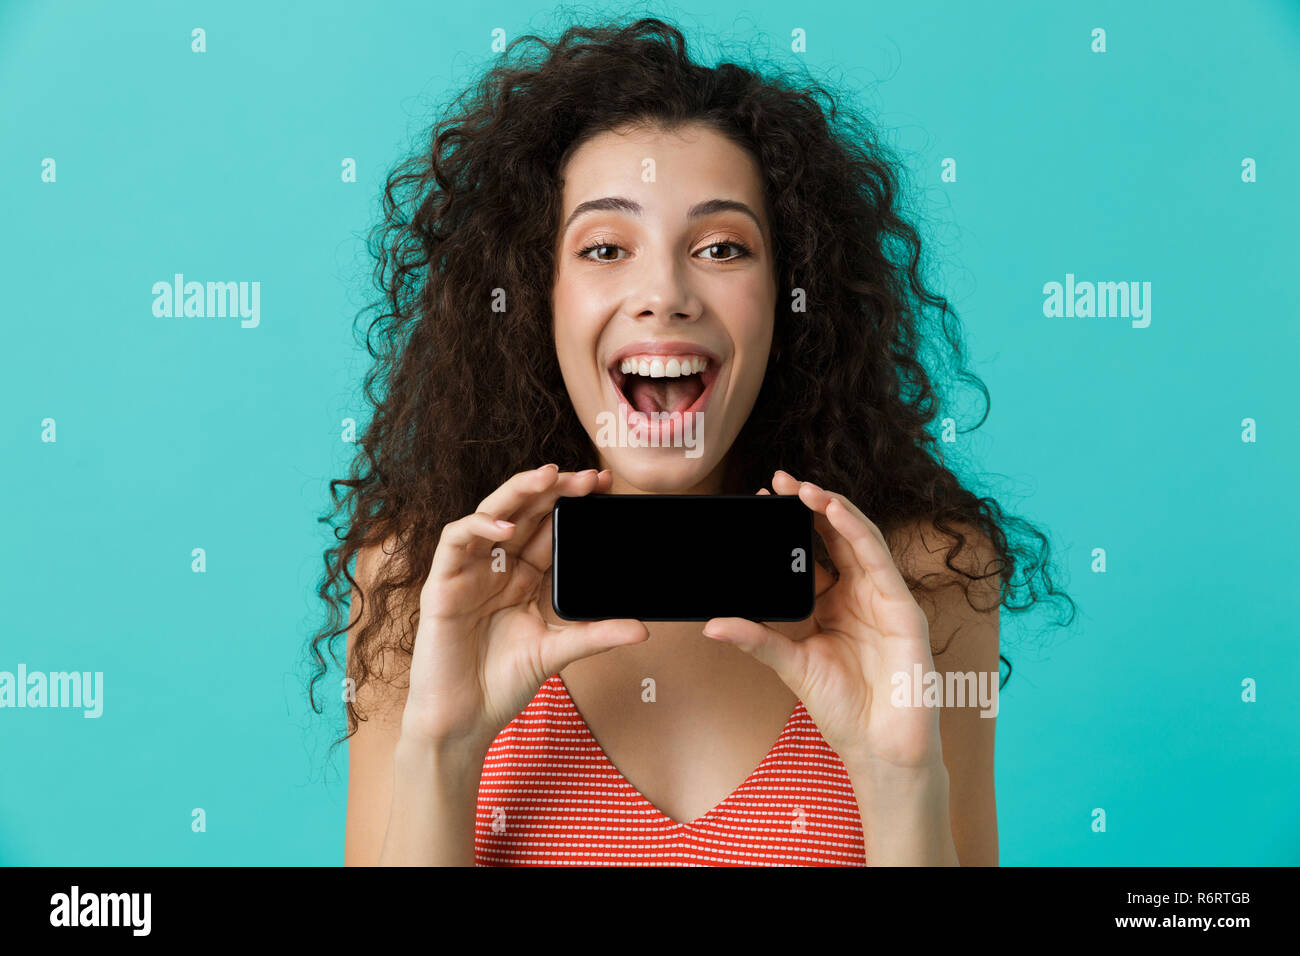 Photo de femme excité 20s avec des cheveux bouclés smiling and holding mobile phone isolé sur fond bleu Banque D'Images